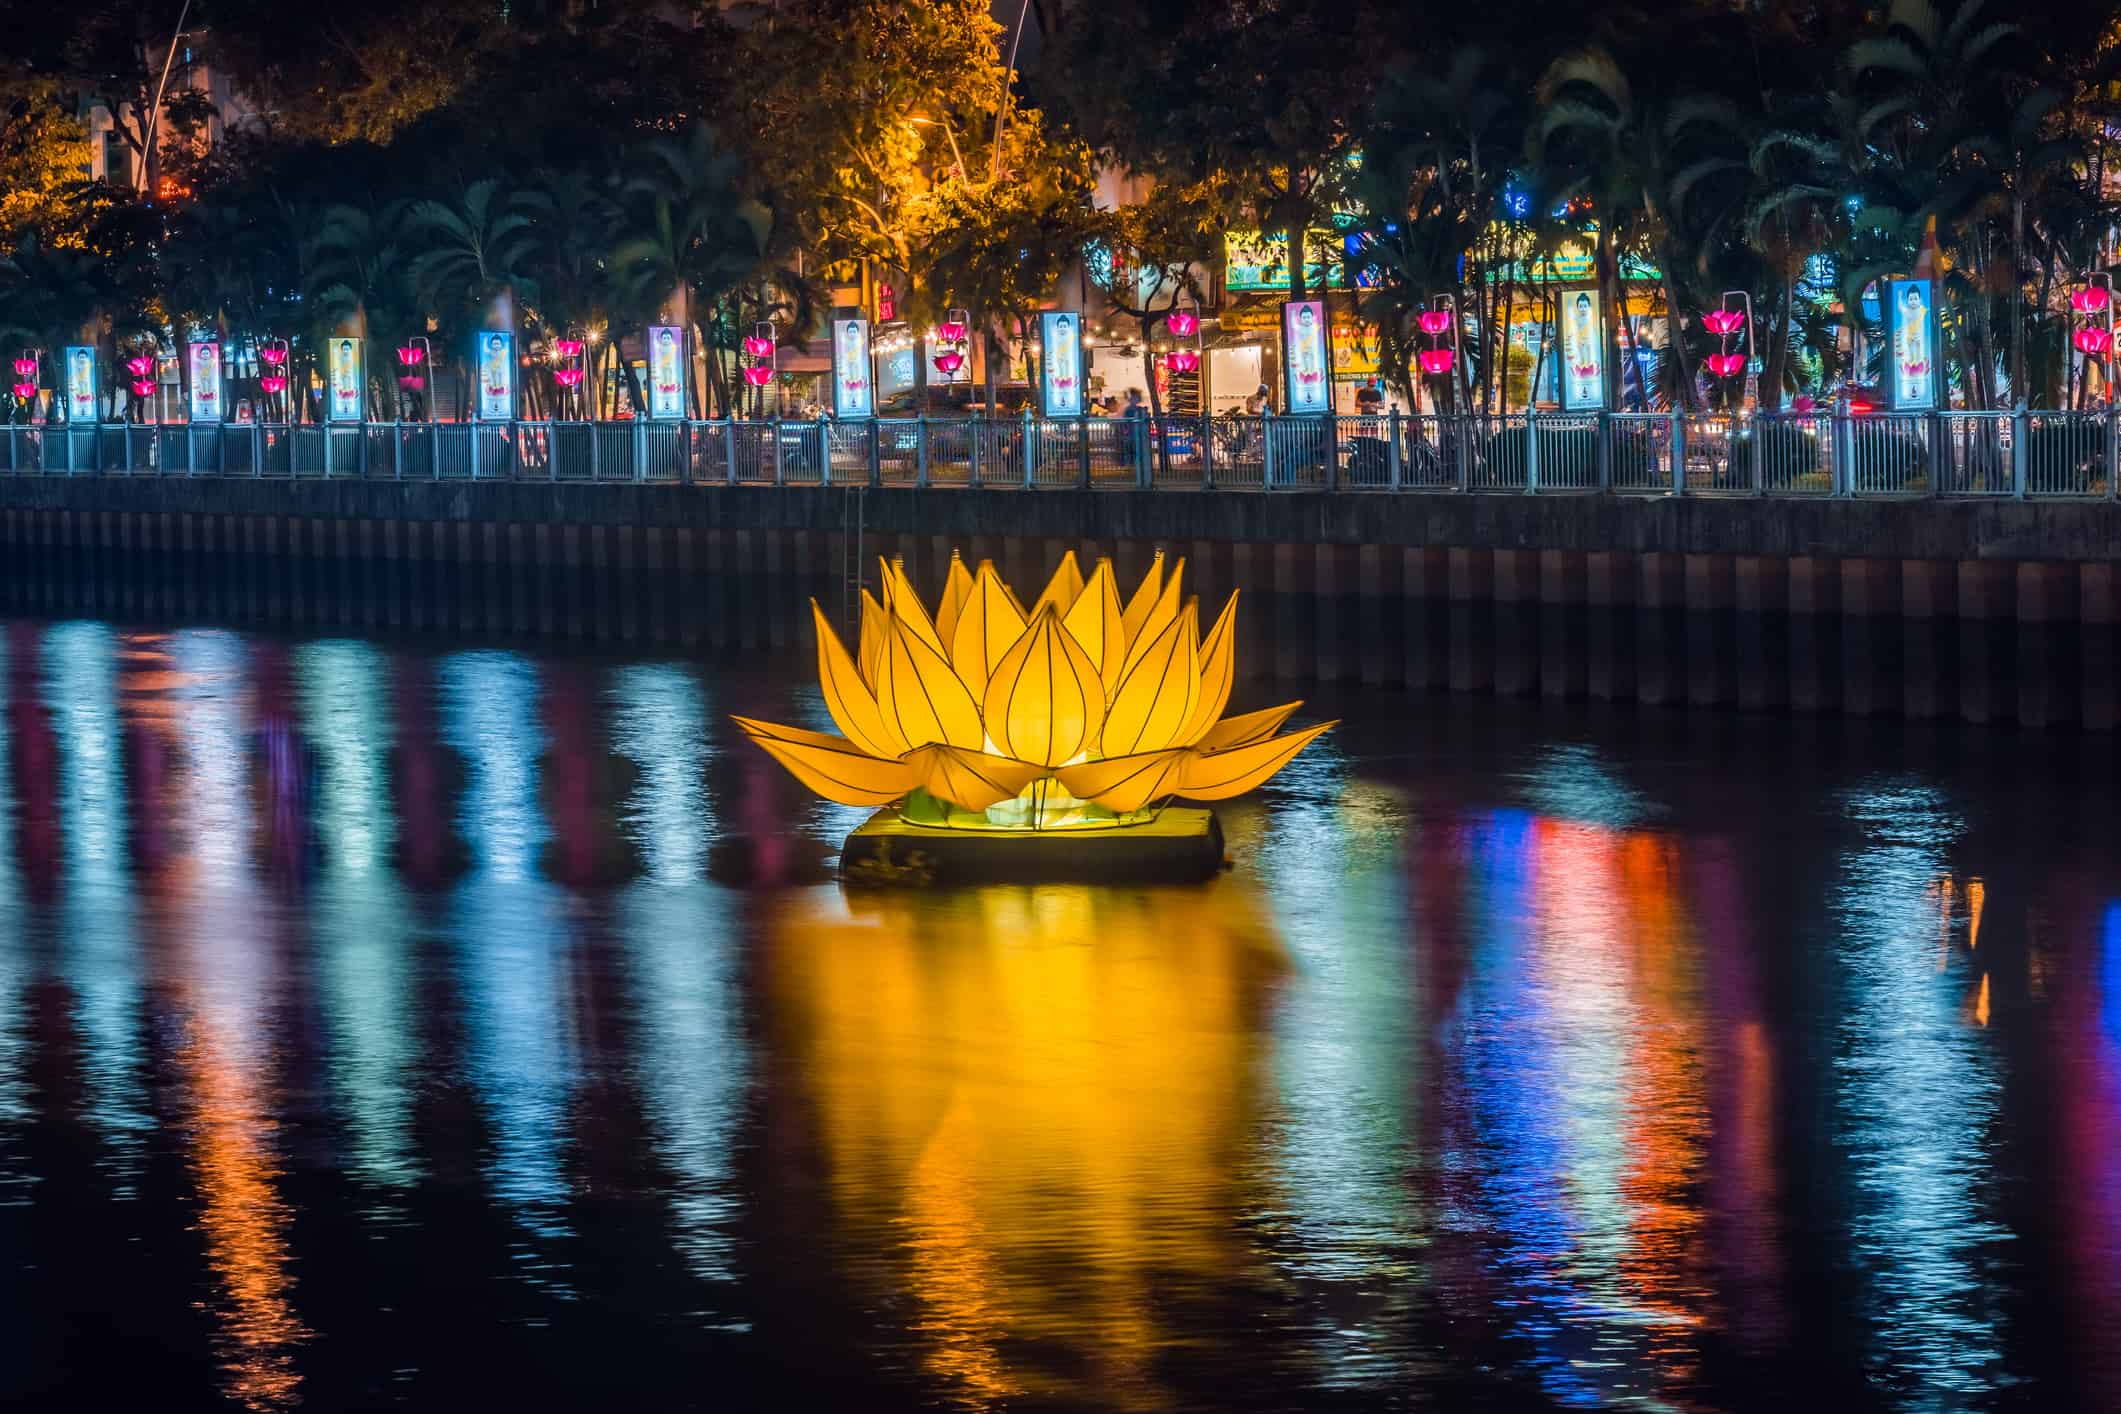 Floating colored lotus lanterns